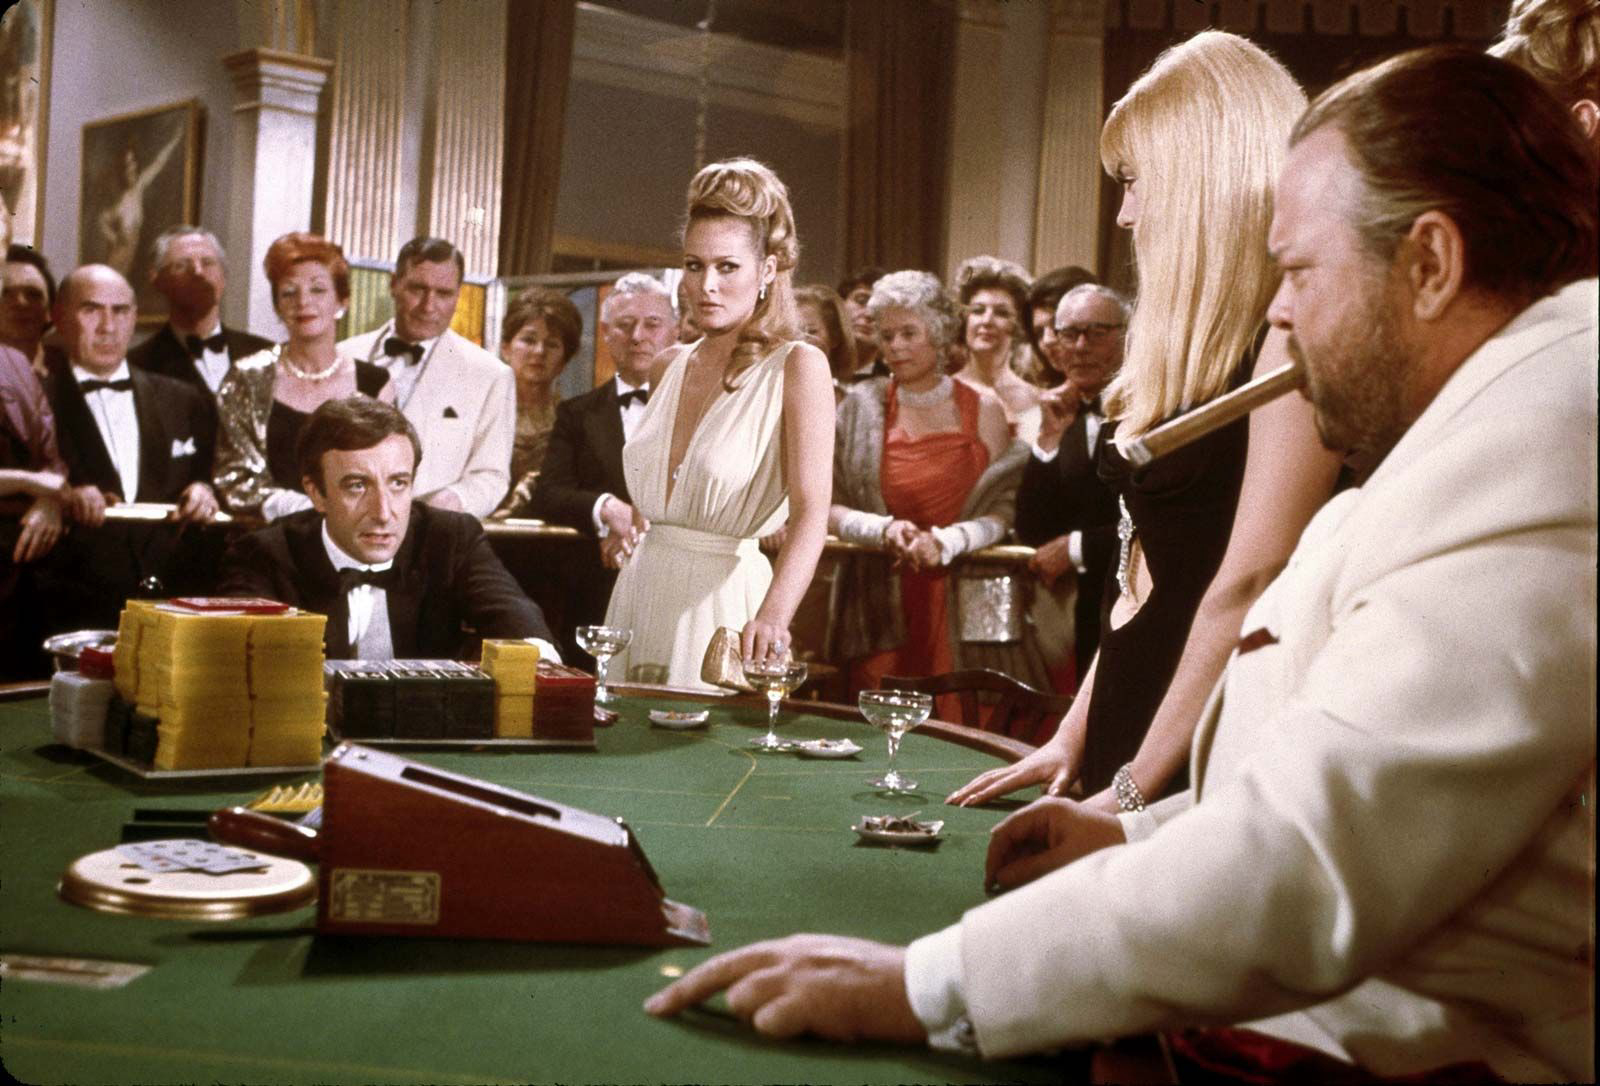 Sòng Bạc Hoàng Gia - Casino Royale (2006)